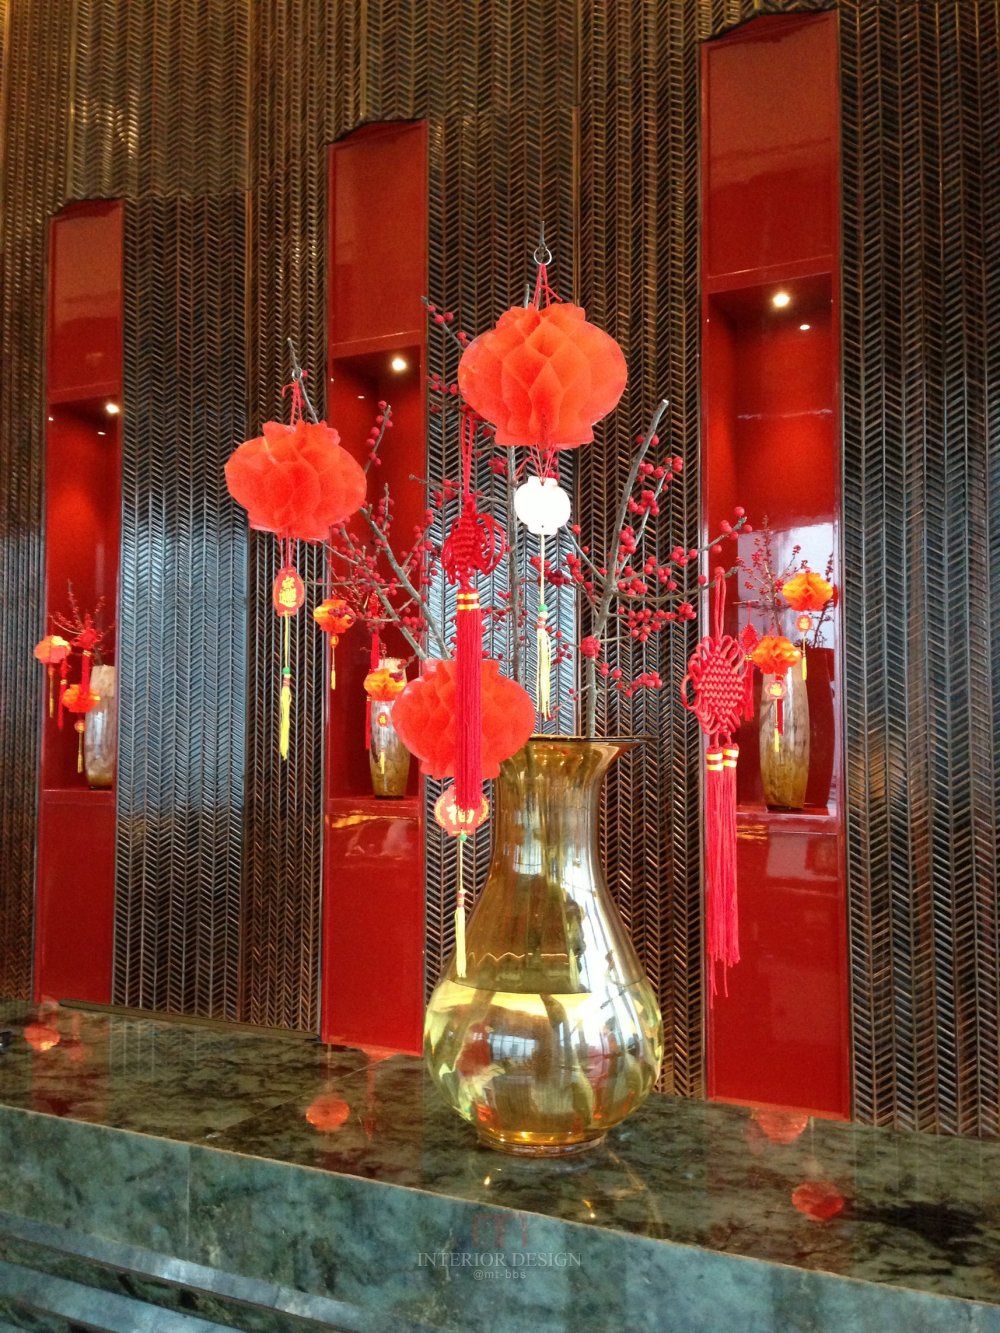 成都丽思卡尔顿酒店The Ritz-Carlton Chengdu(欢迎更新,高分奖励)_IMG_6373.JPG